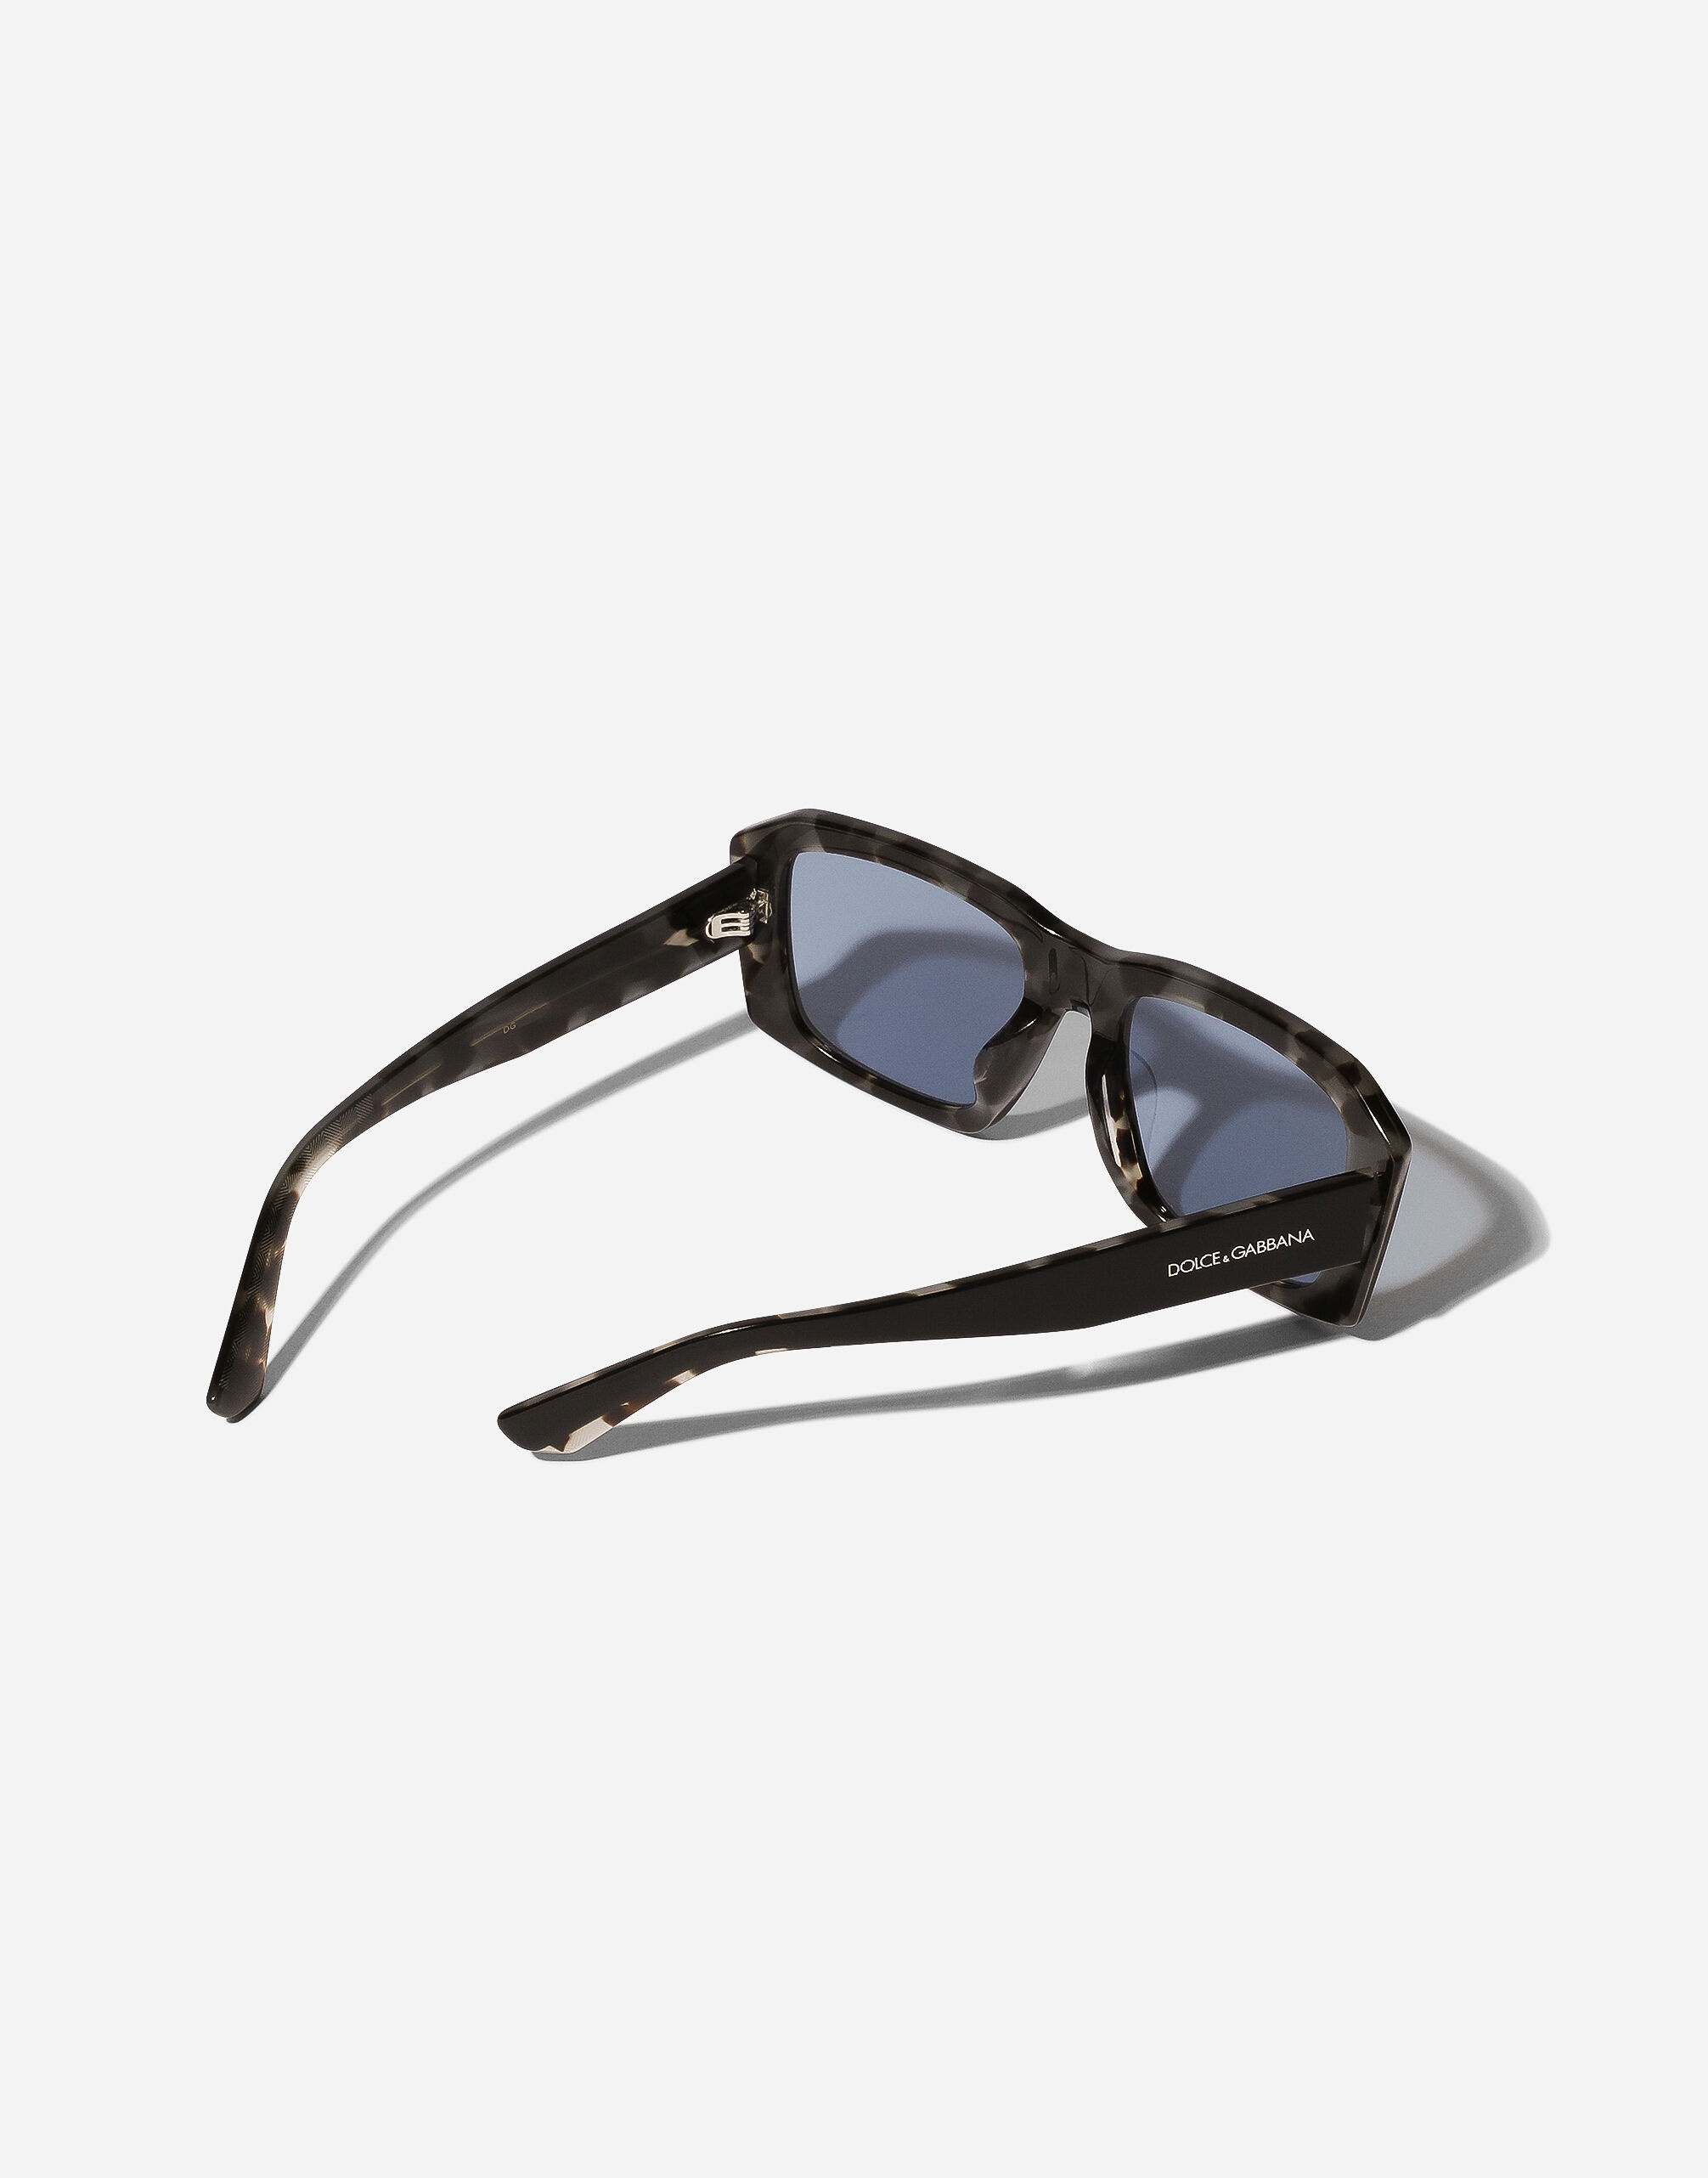 Lusso Sartoriale Sunglasses - 4